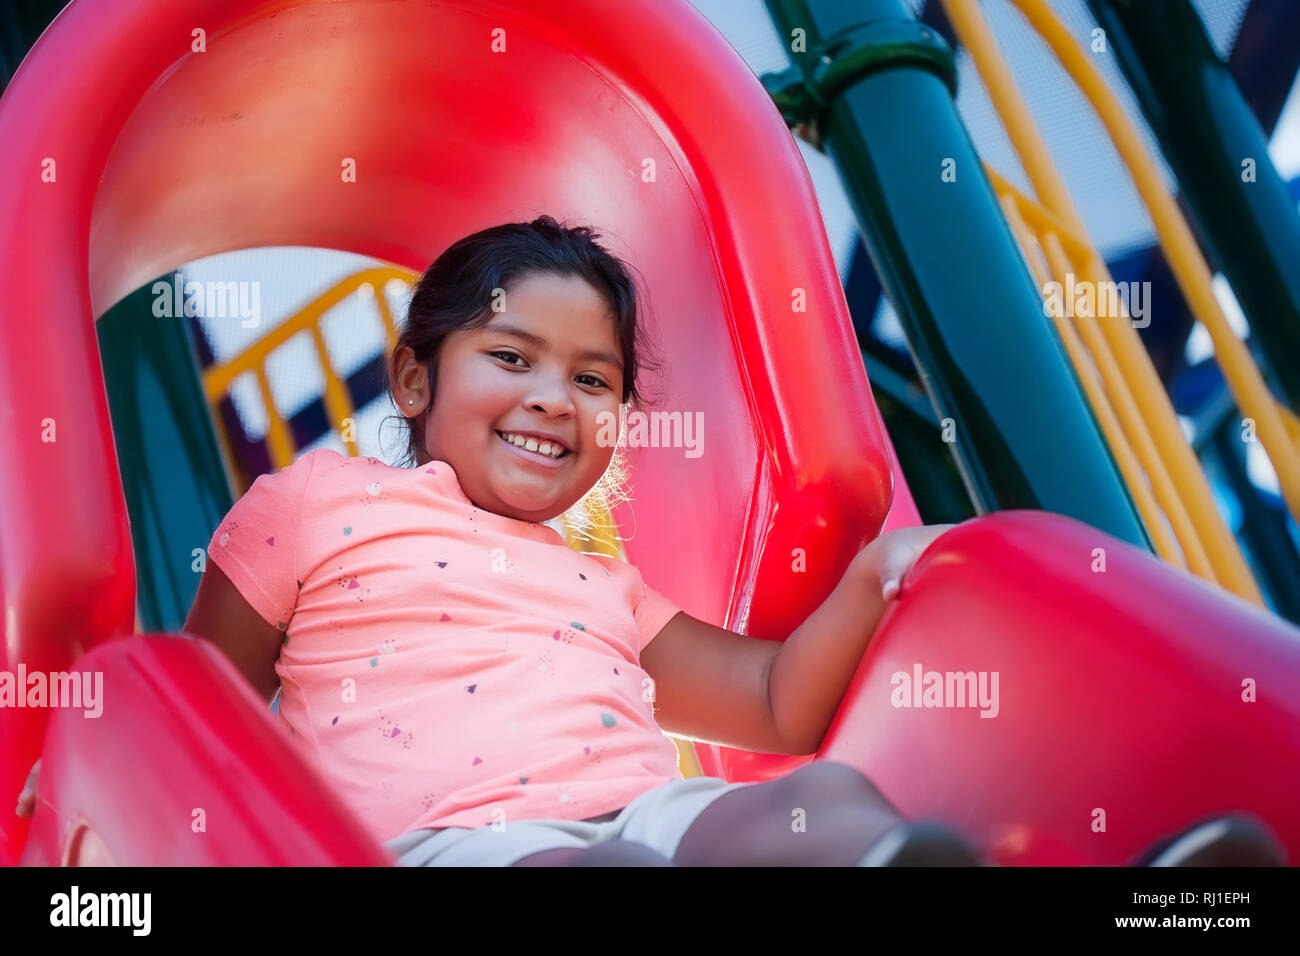 Une heureuse et énergique fille jouant sur une aire rouge glisse, sur le point de glisser vers le bas. Banque D'Images